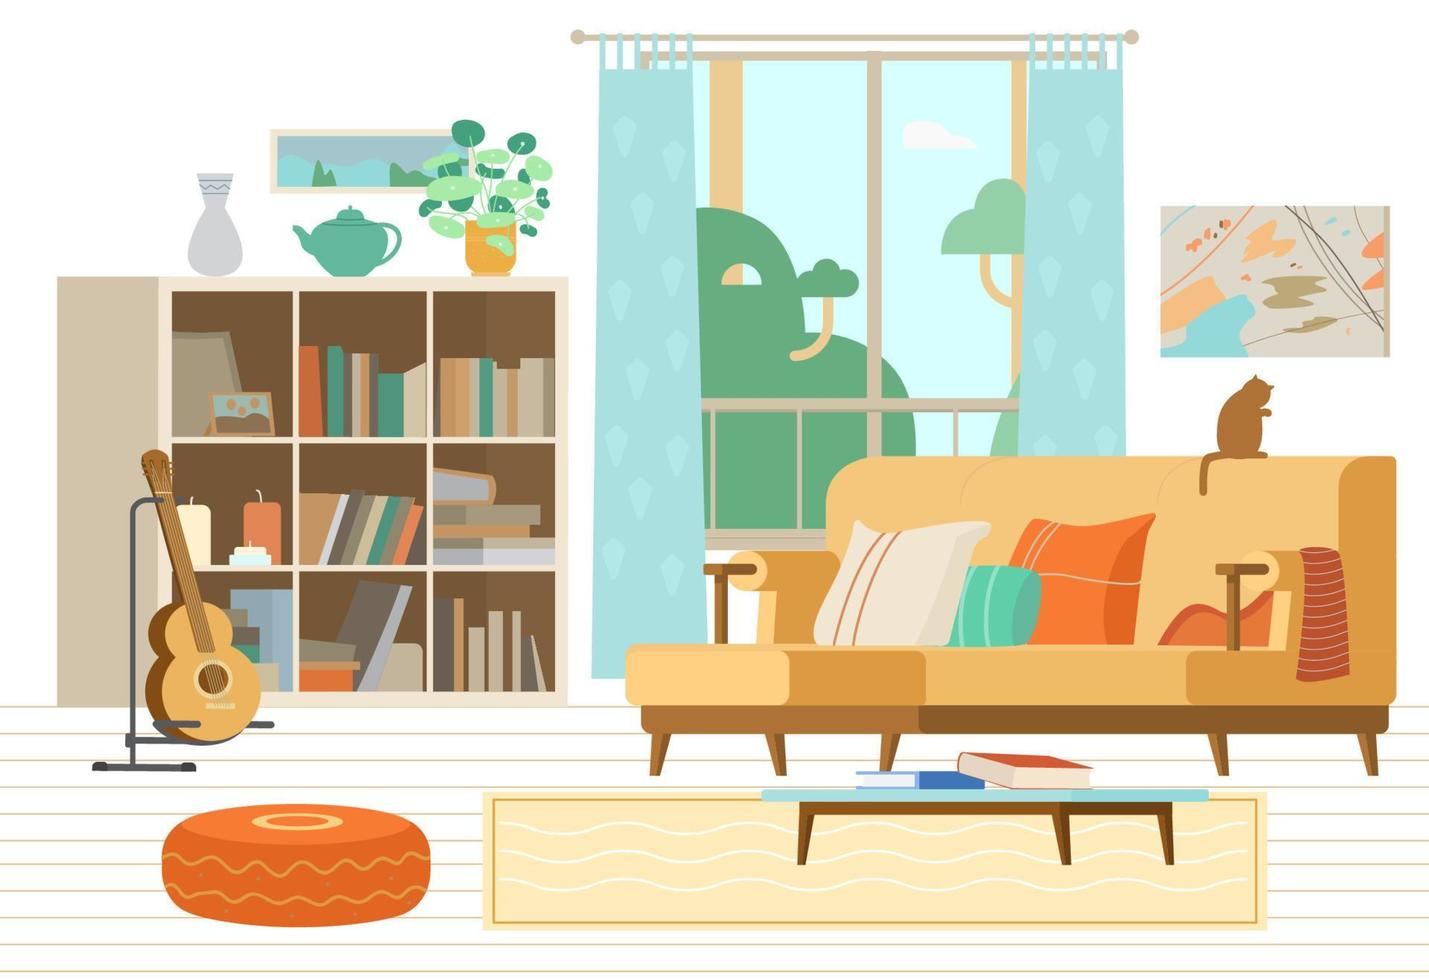 ilustração em vetor plana interior aconchegante sala de estar. sofá, estante, guitarra em suporte, mesa de centro com livros, banco acolchoado, pinturas abstratas, elementos de decoração.